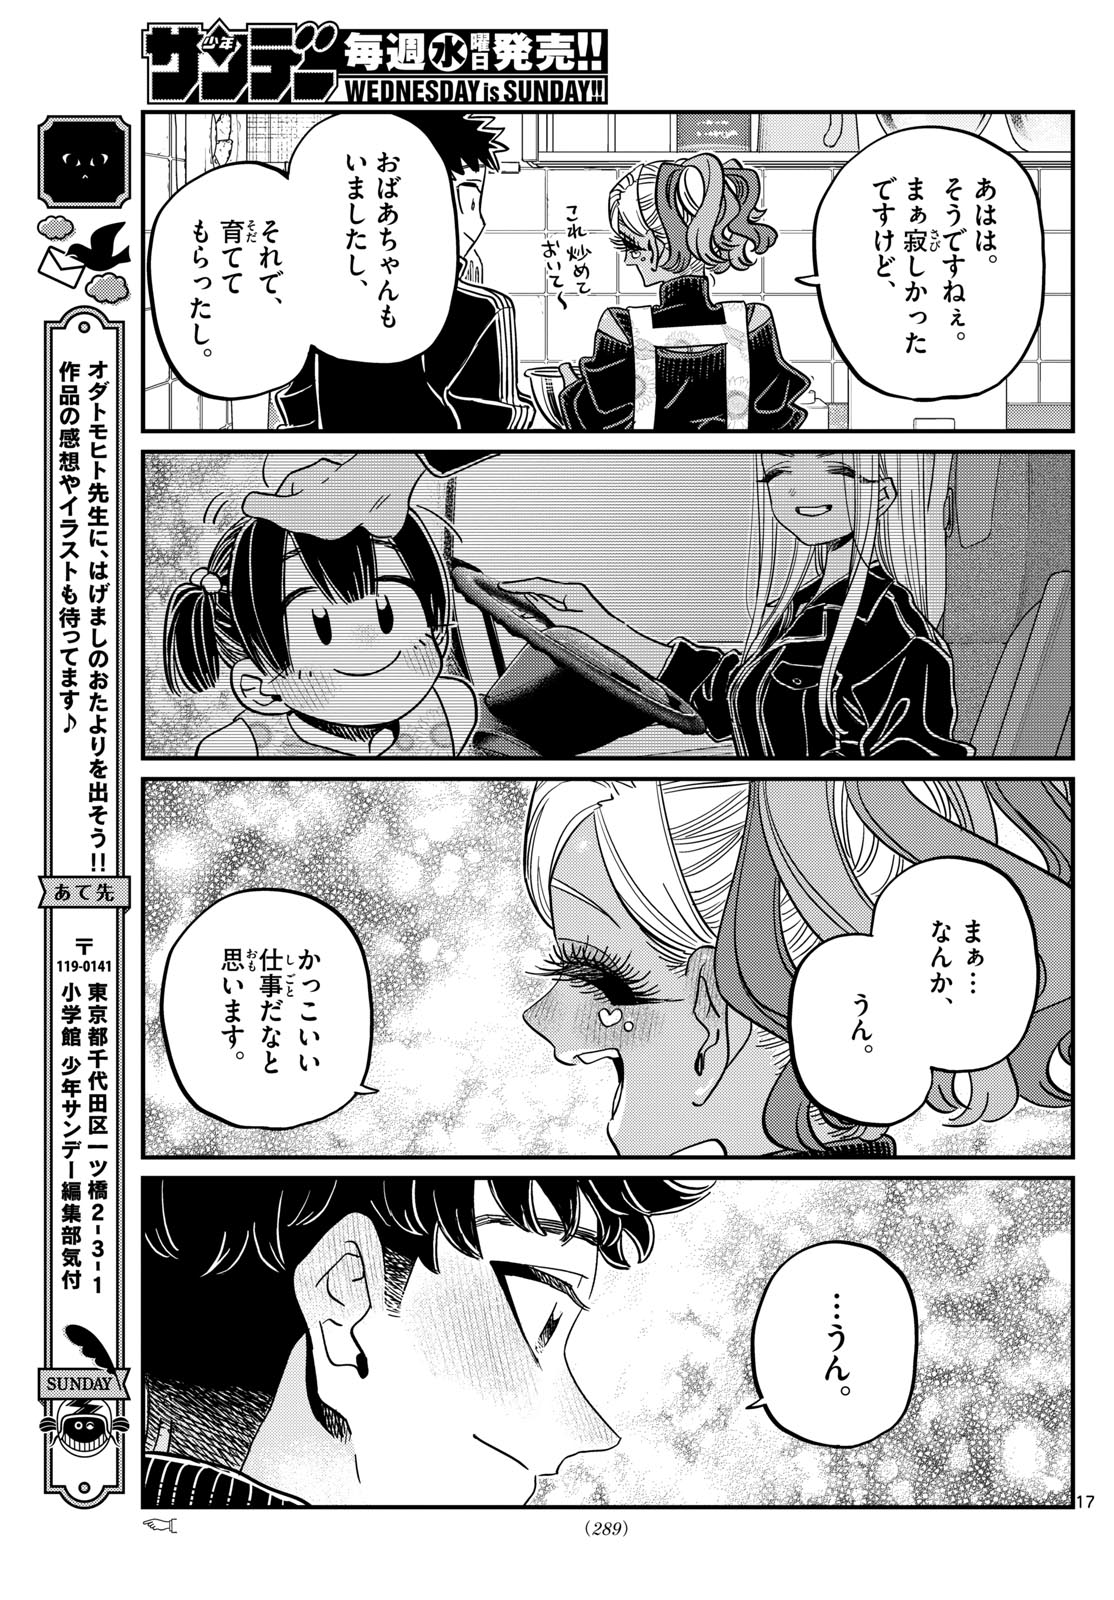 Komi-san wa Komyushou Desu - Chapter 469 - Page 7